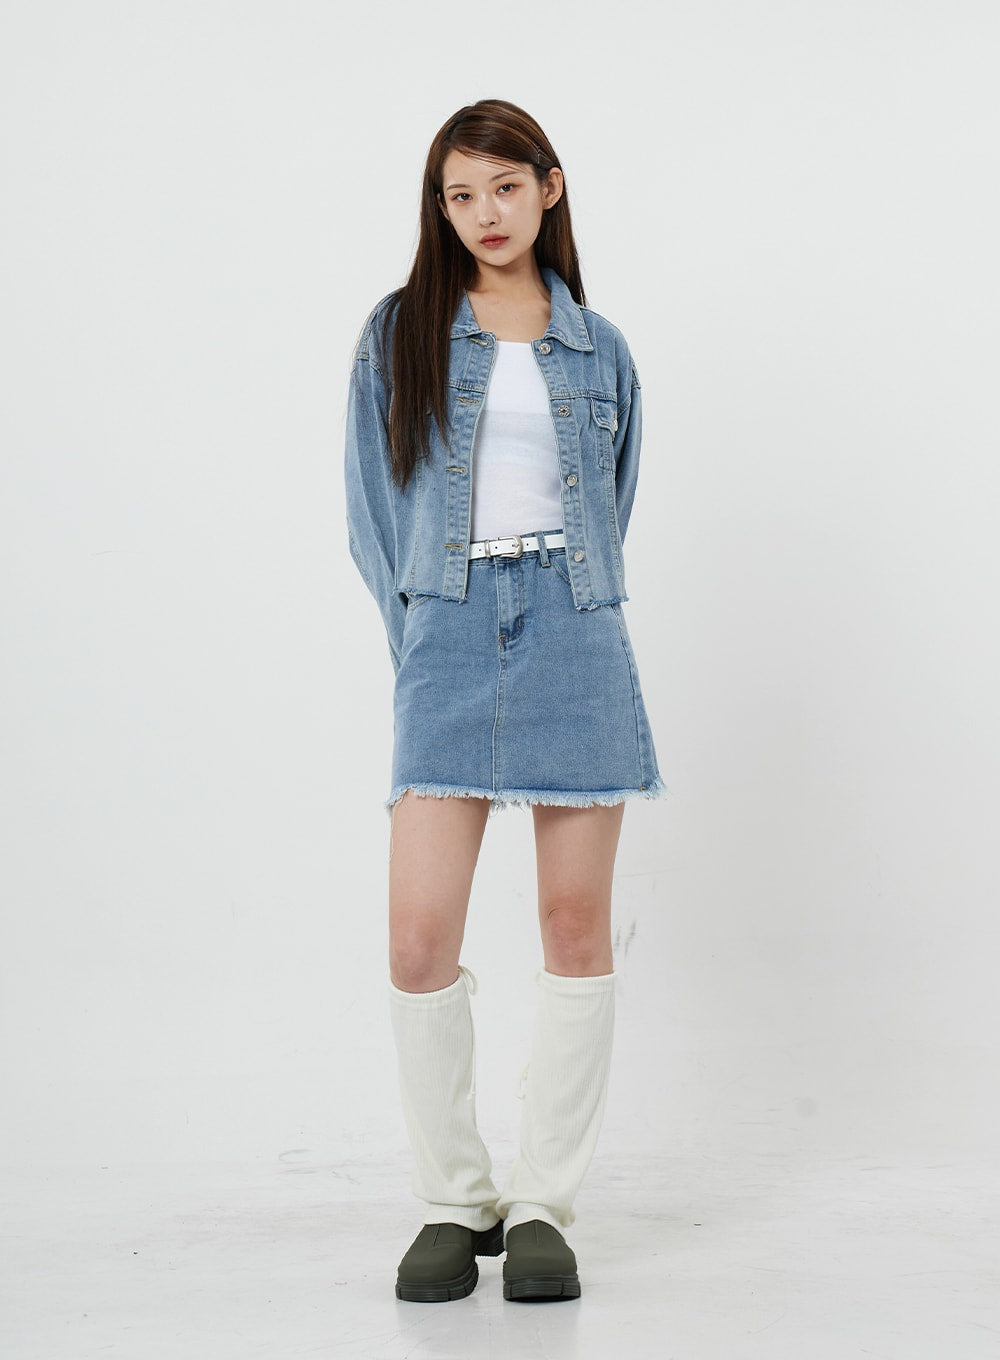 Sienna Damage Jeans Miniskirt CS21